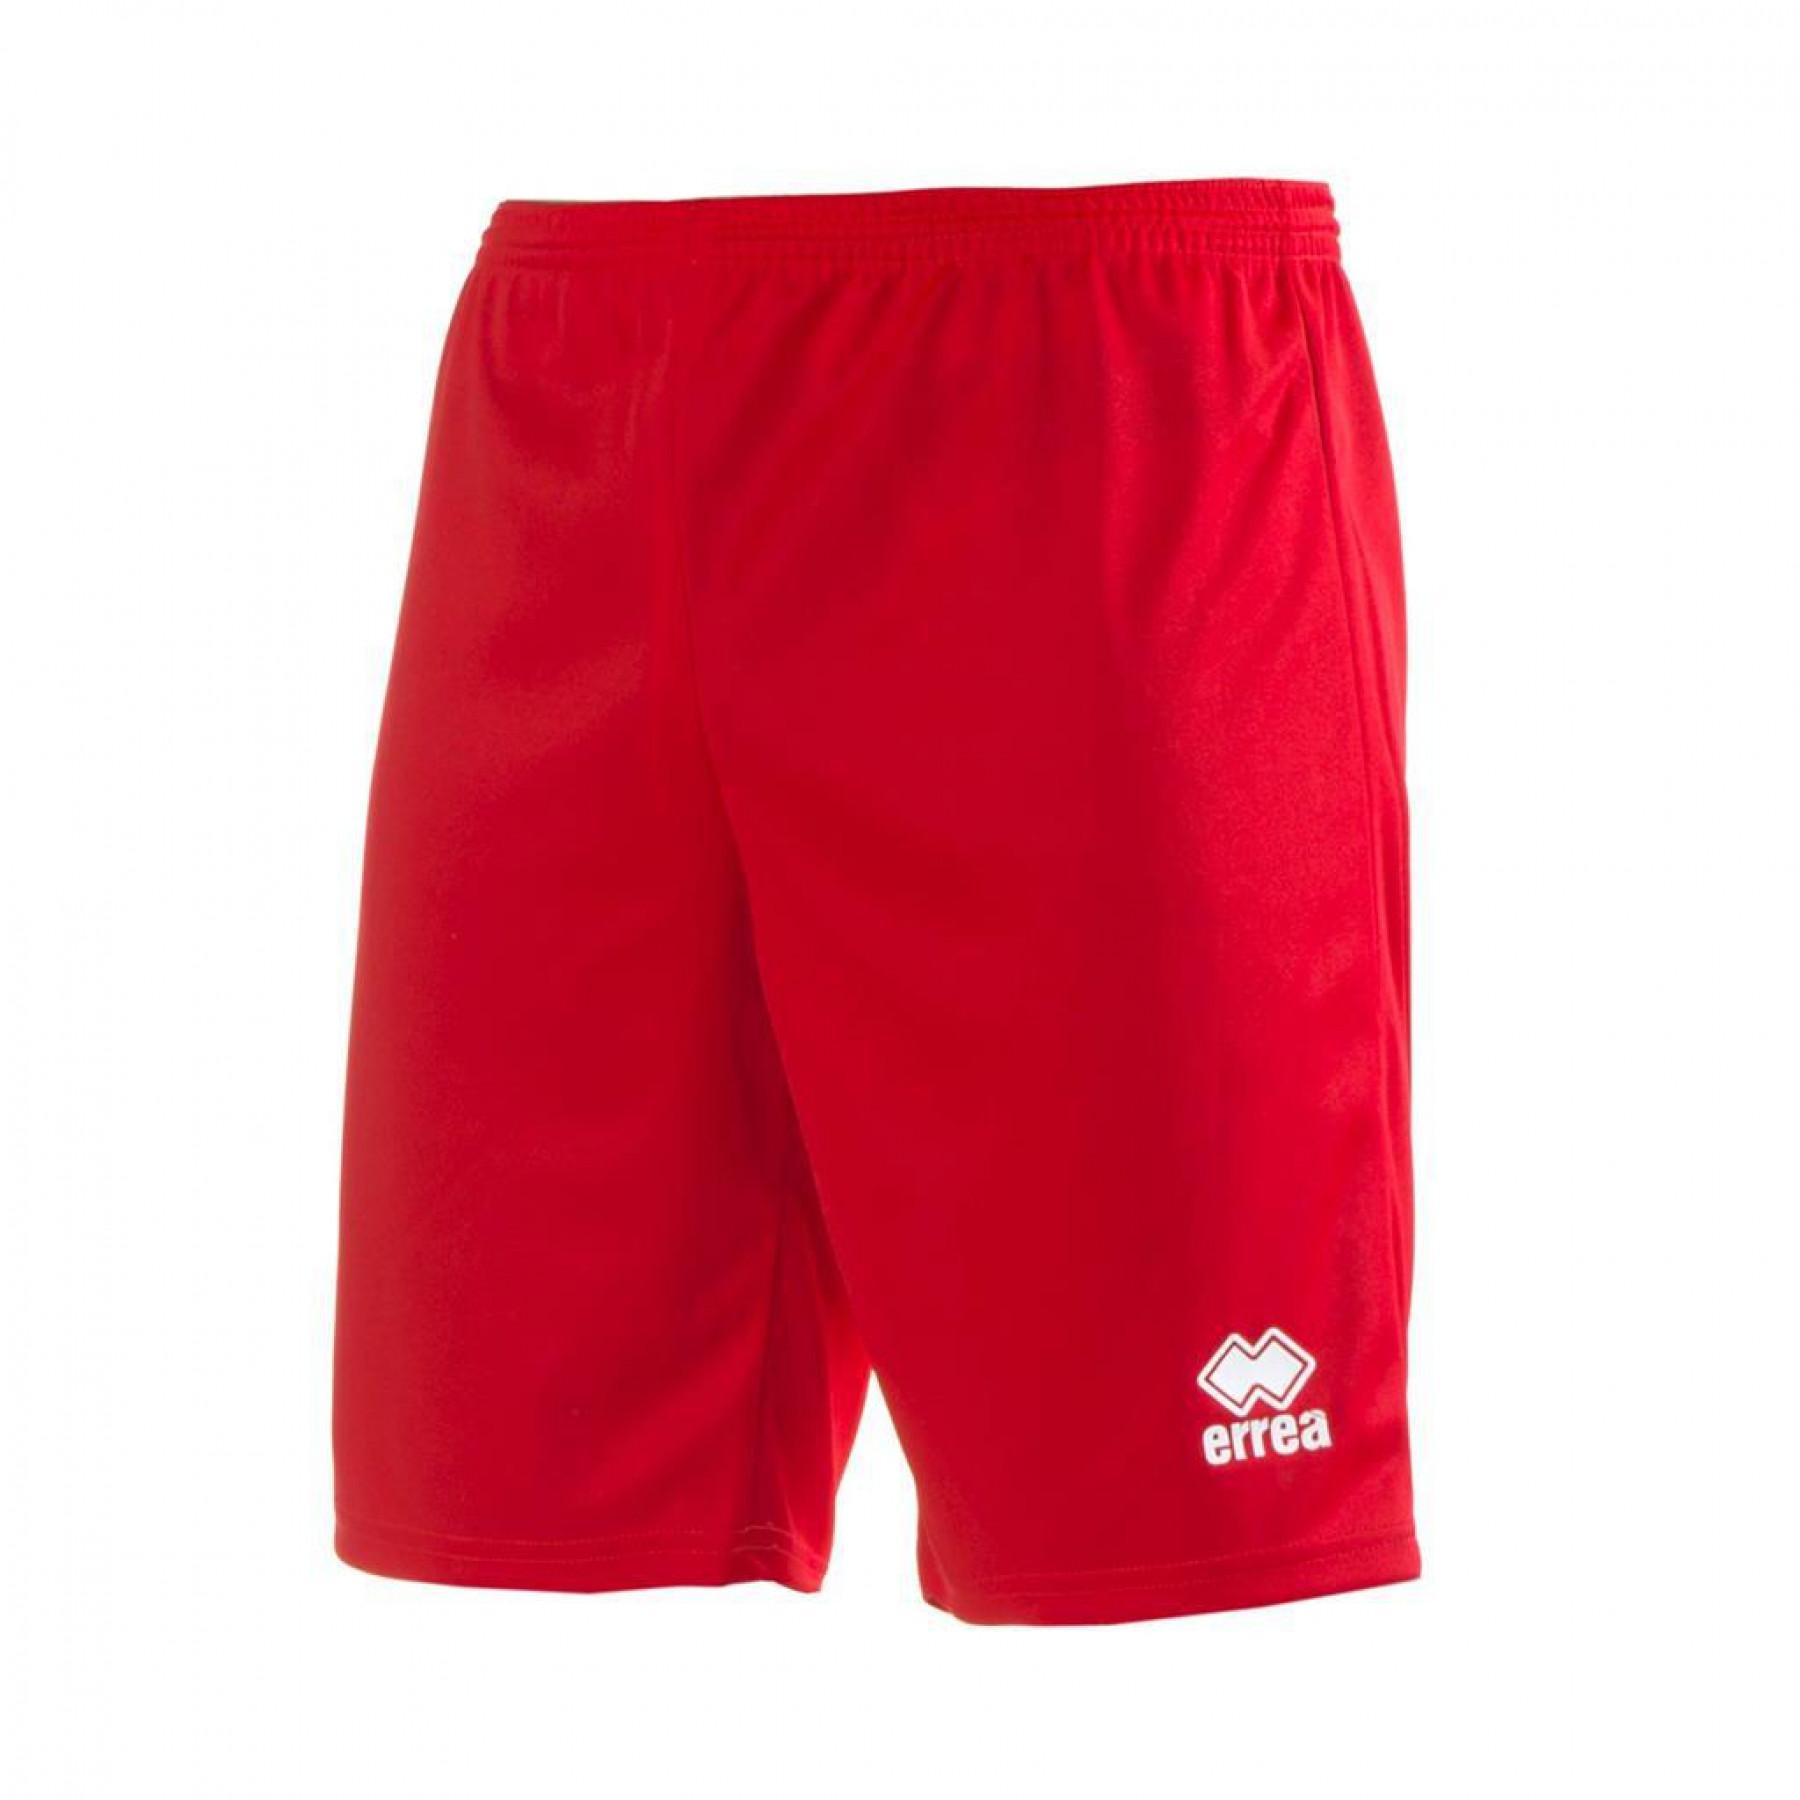 Bermuda shorts Errea Maxi Skin